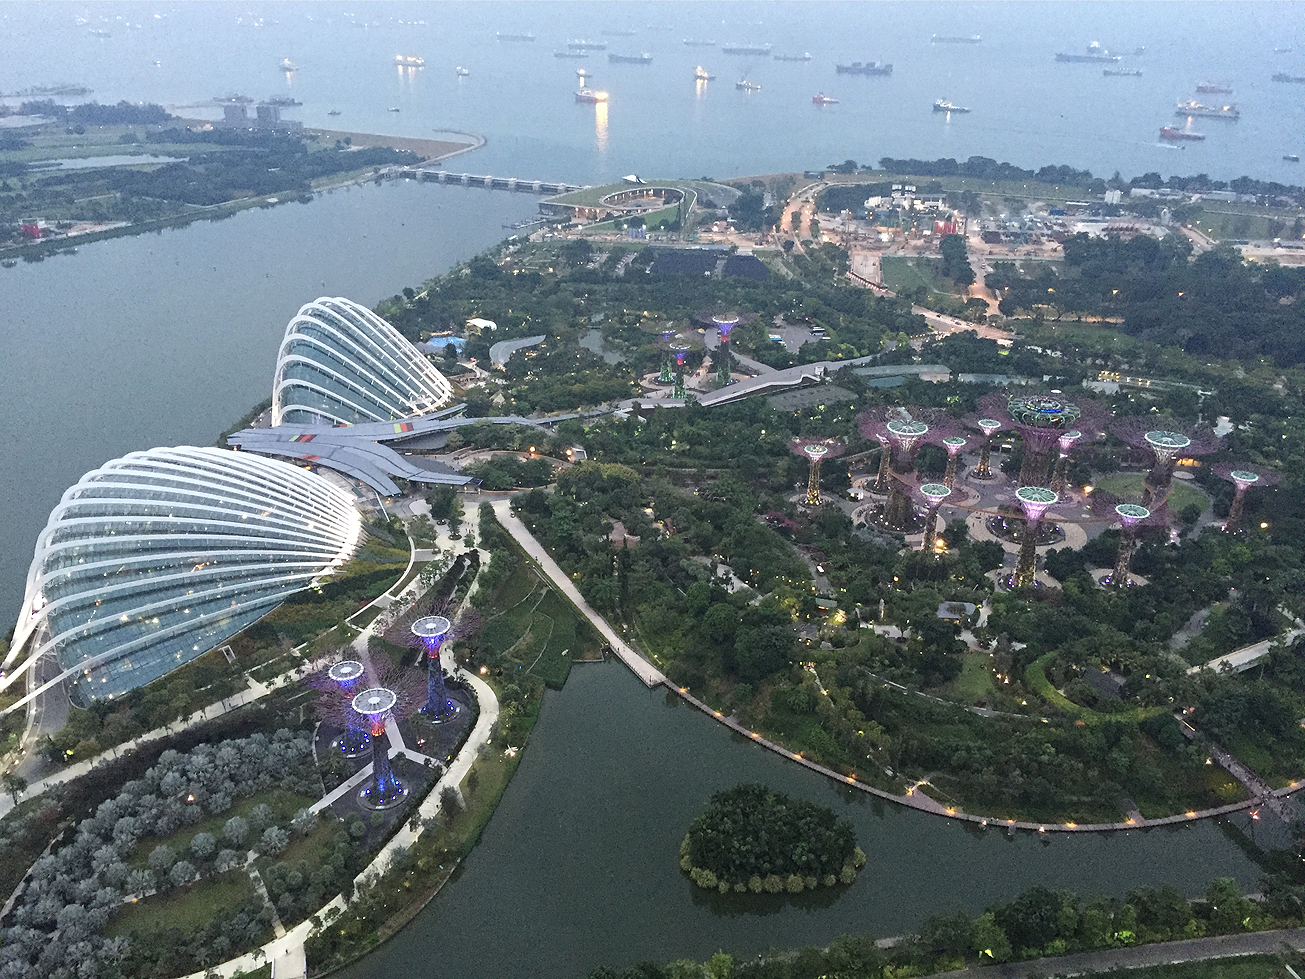 藤ちょこ Fuzichoco シンガポール 近未来的な建物と緑の融合がすごかった 造形かっこいい Http T Co Y6ggnwbksc Twitter